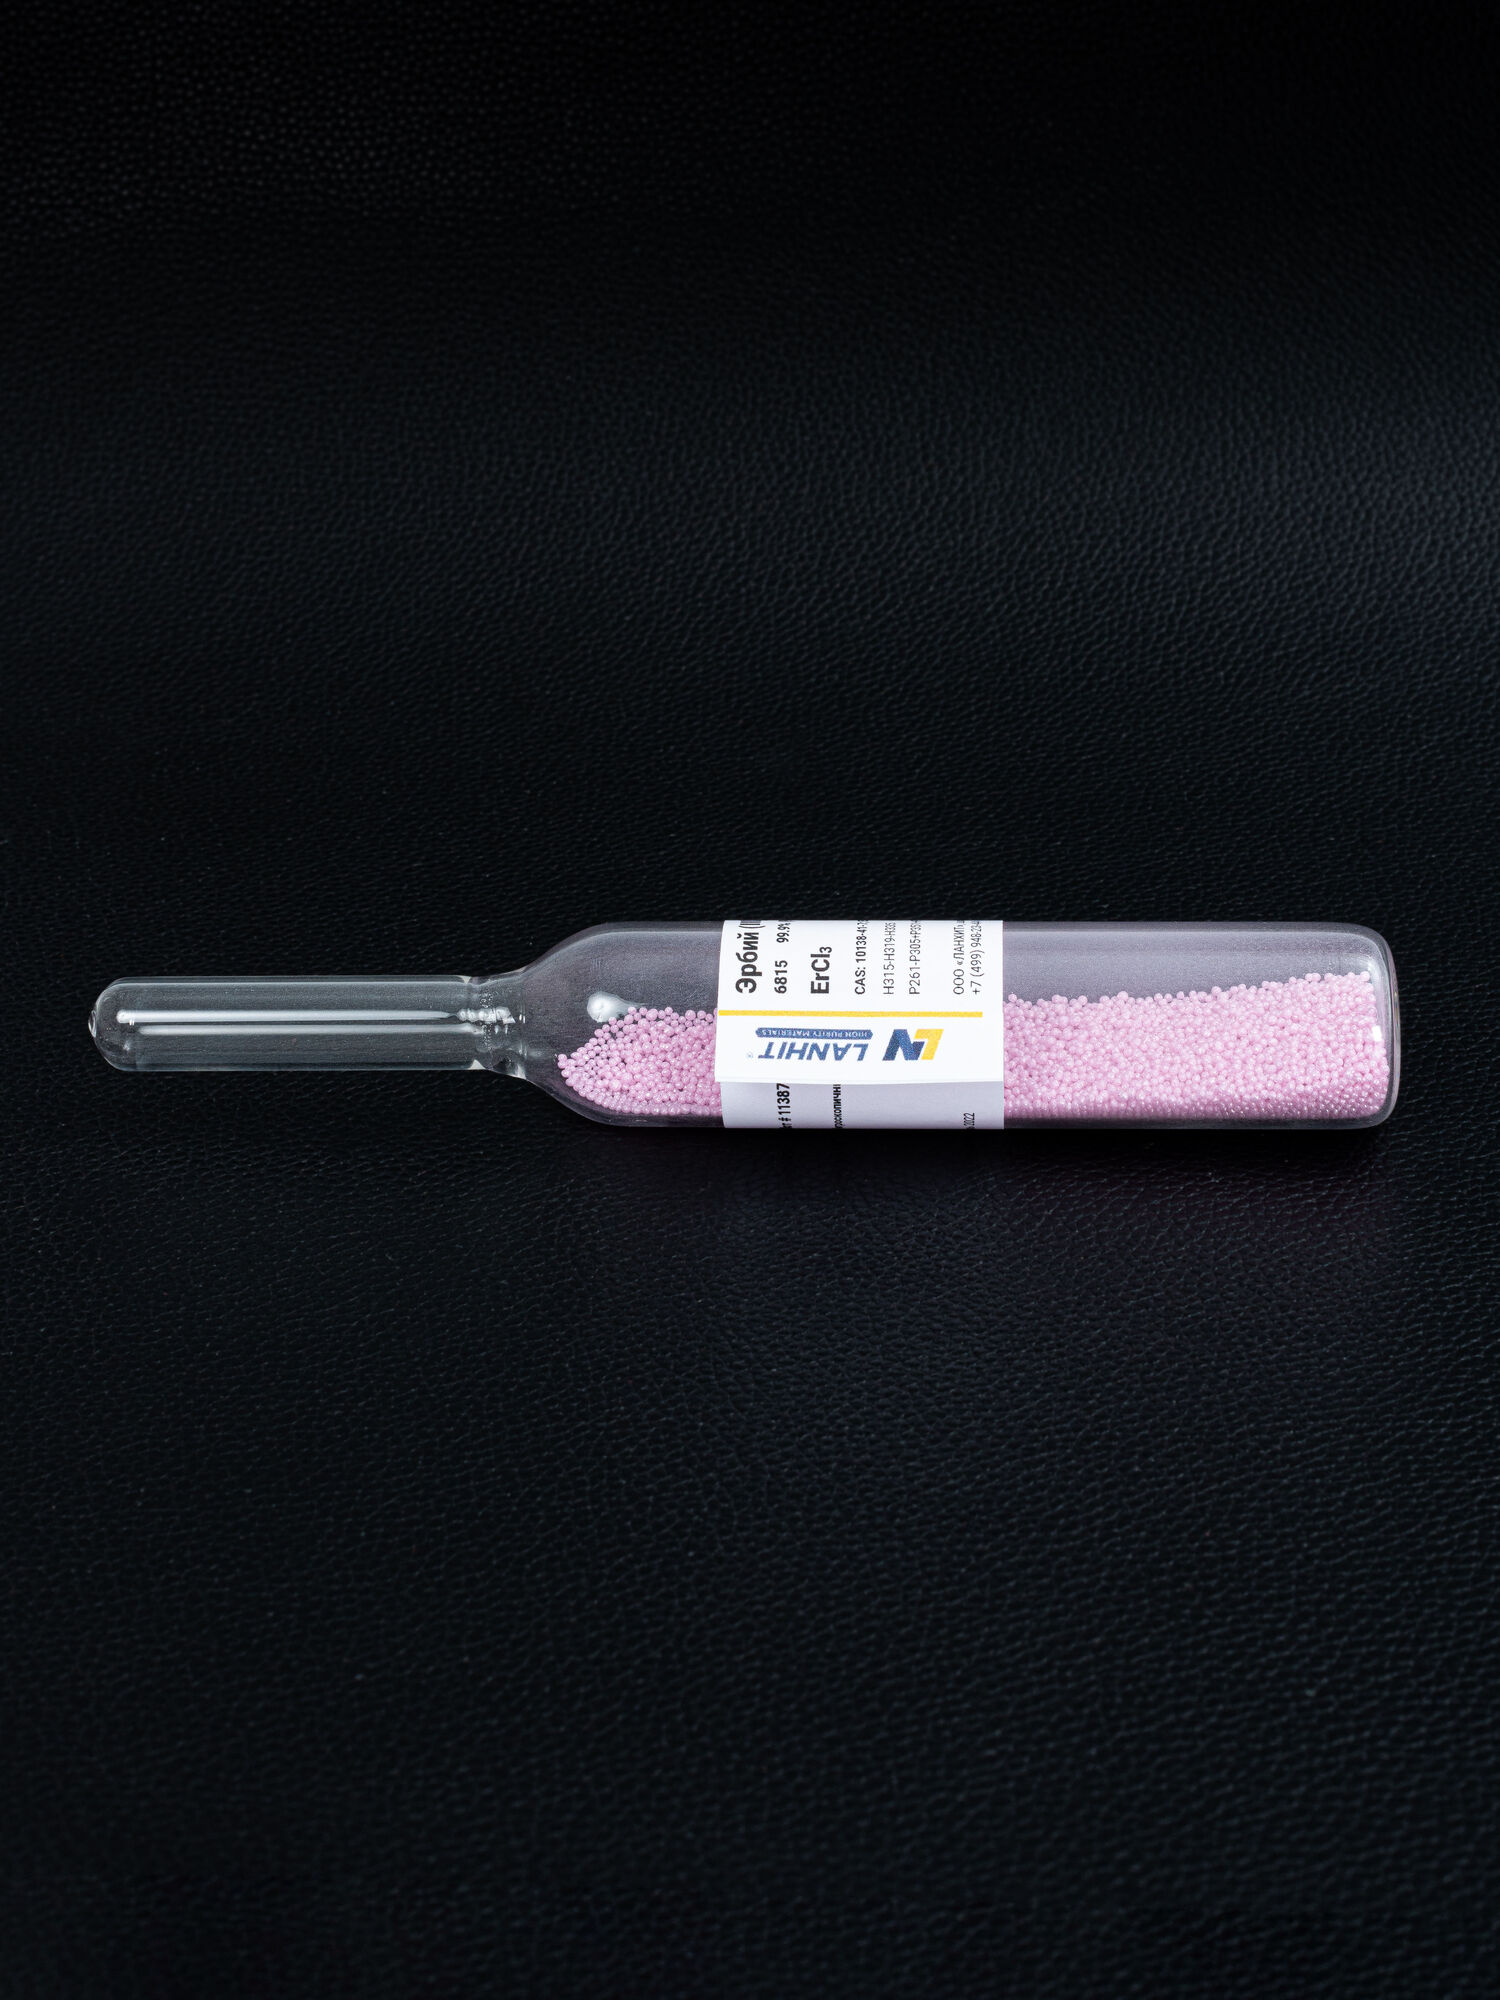 Эрбий (III) хлорид, ультра сухой, 99.9% (РЗМ), -10 меш гранулы